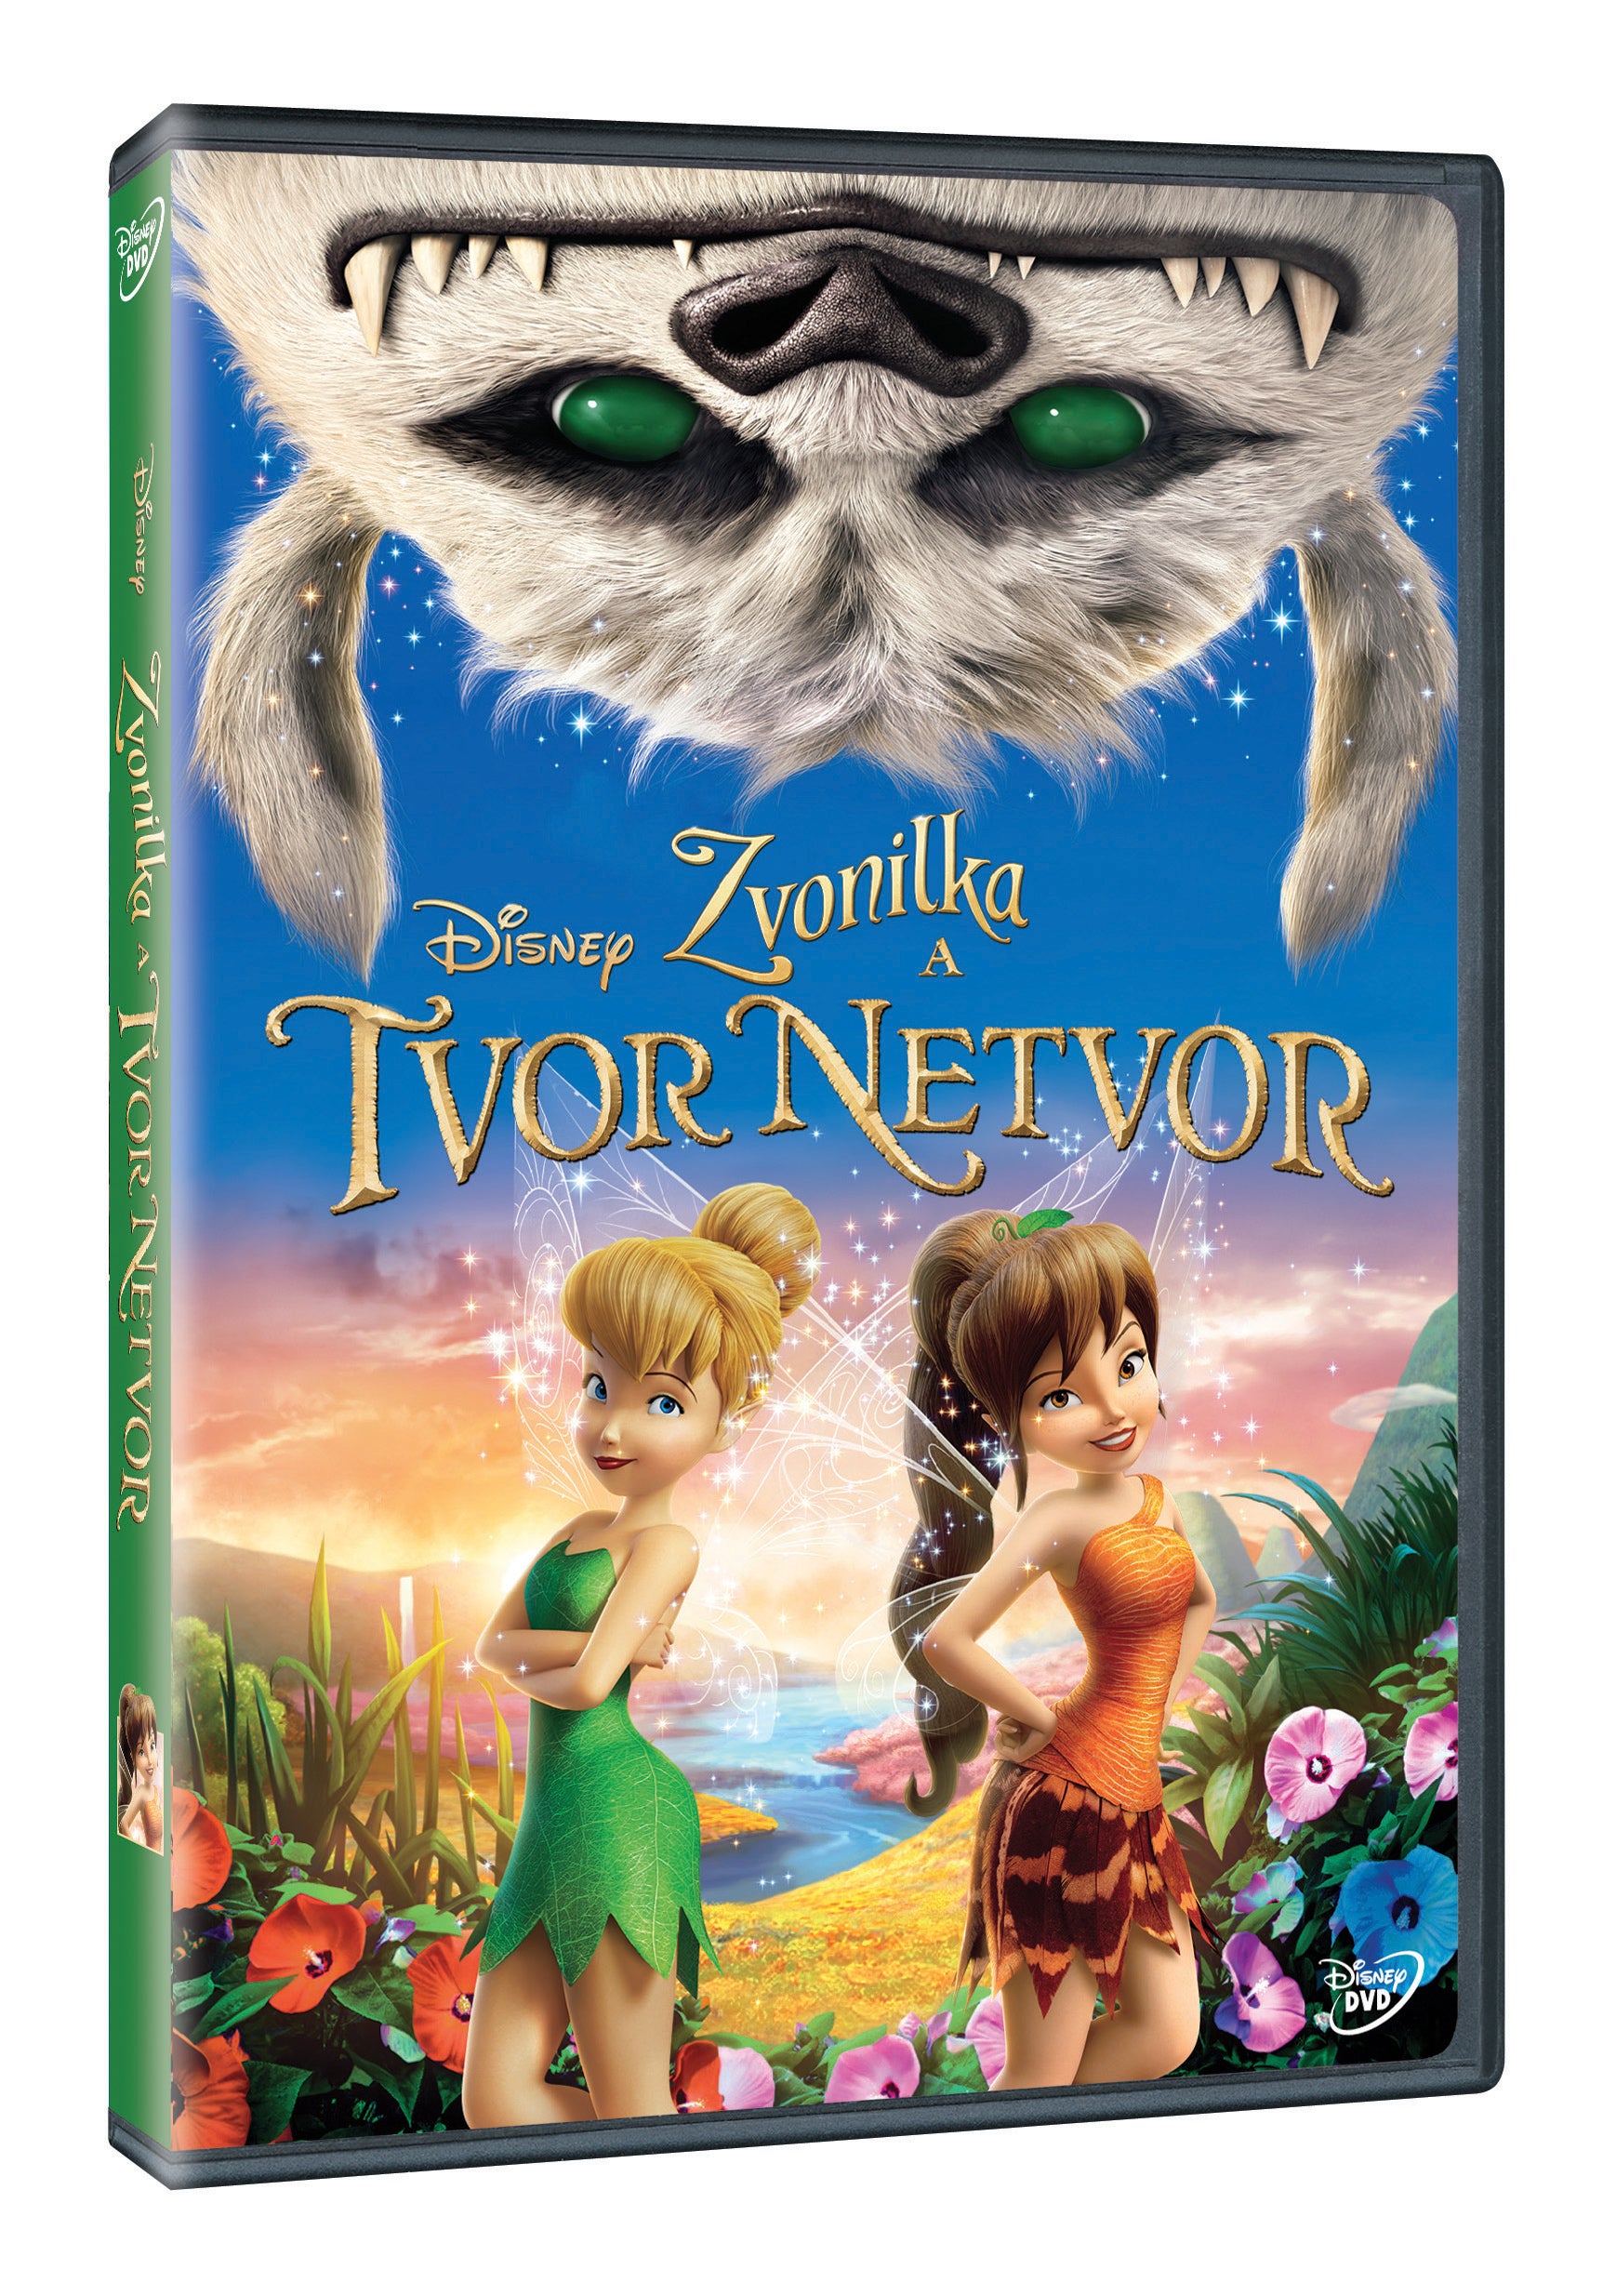 Zvonilka eine TV-Netvor-DVD / Tinker Bell und die Legende vom Neverbeast